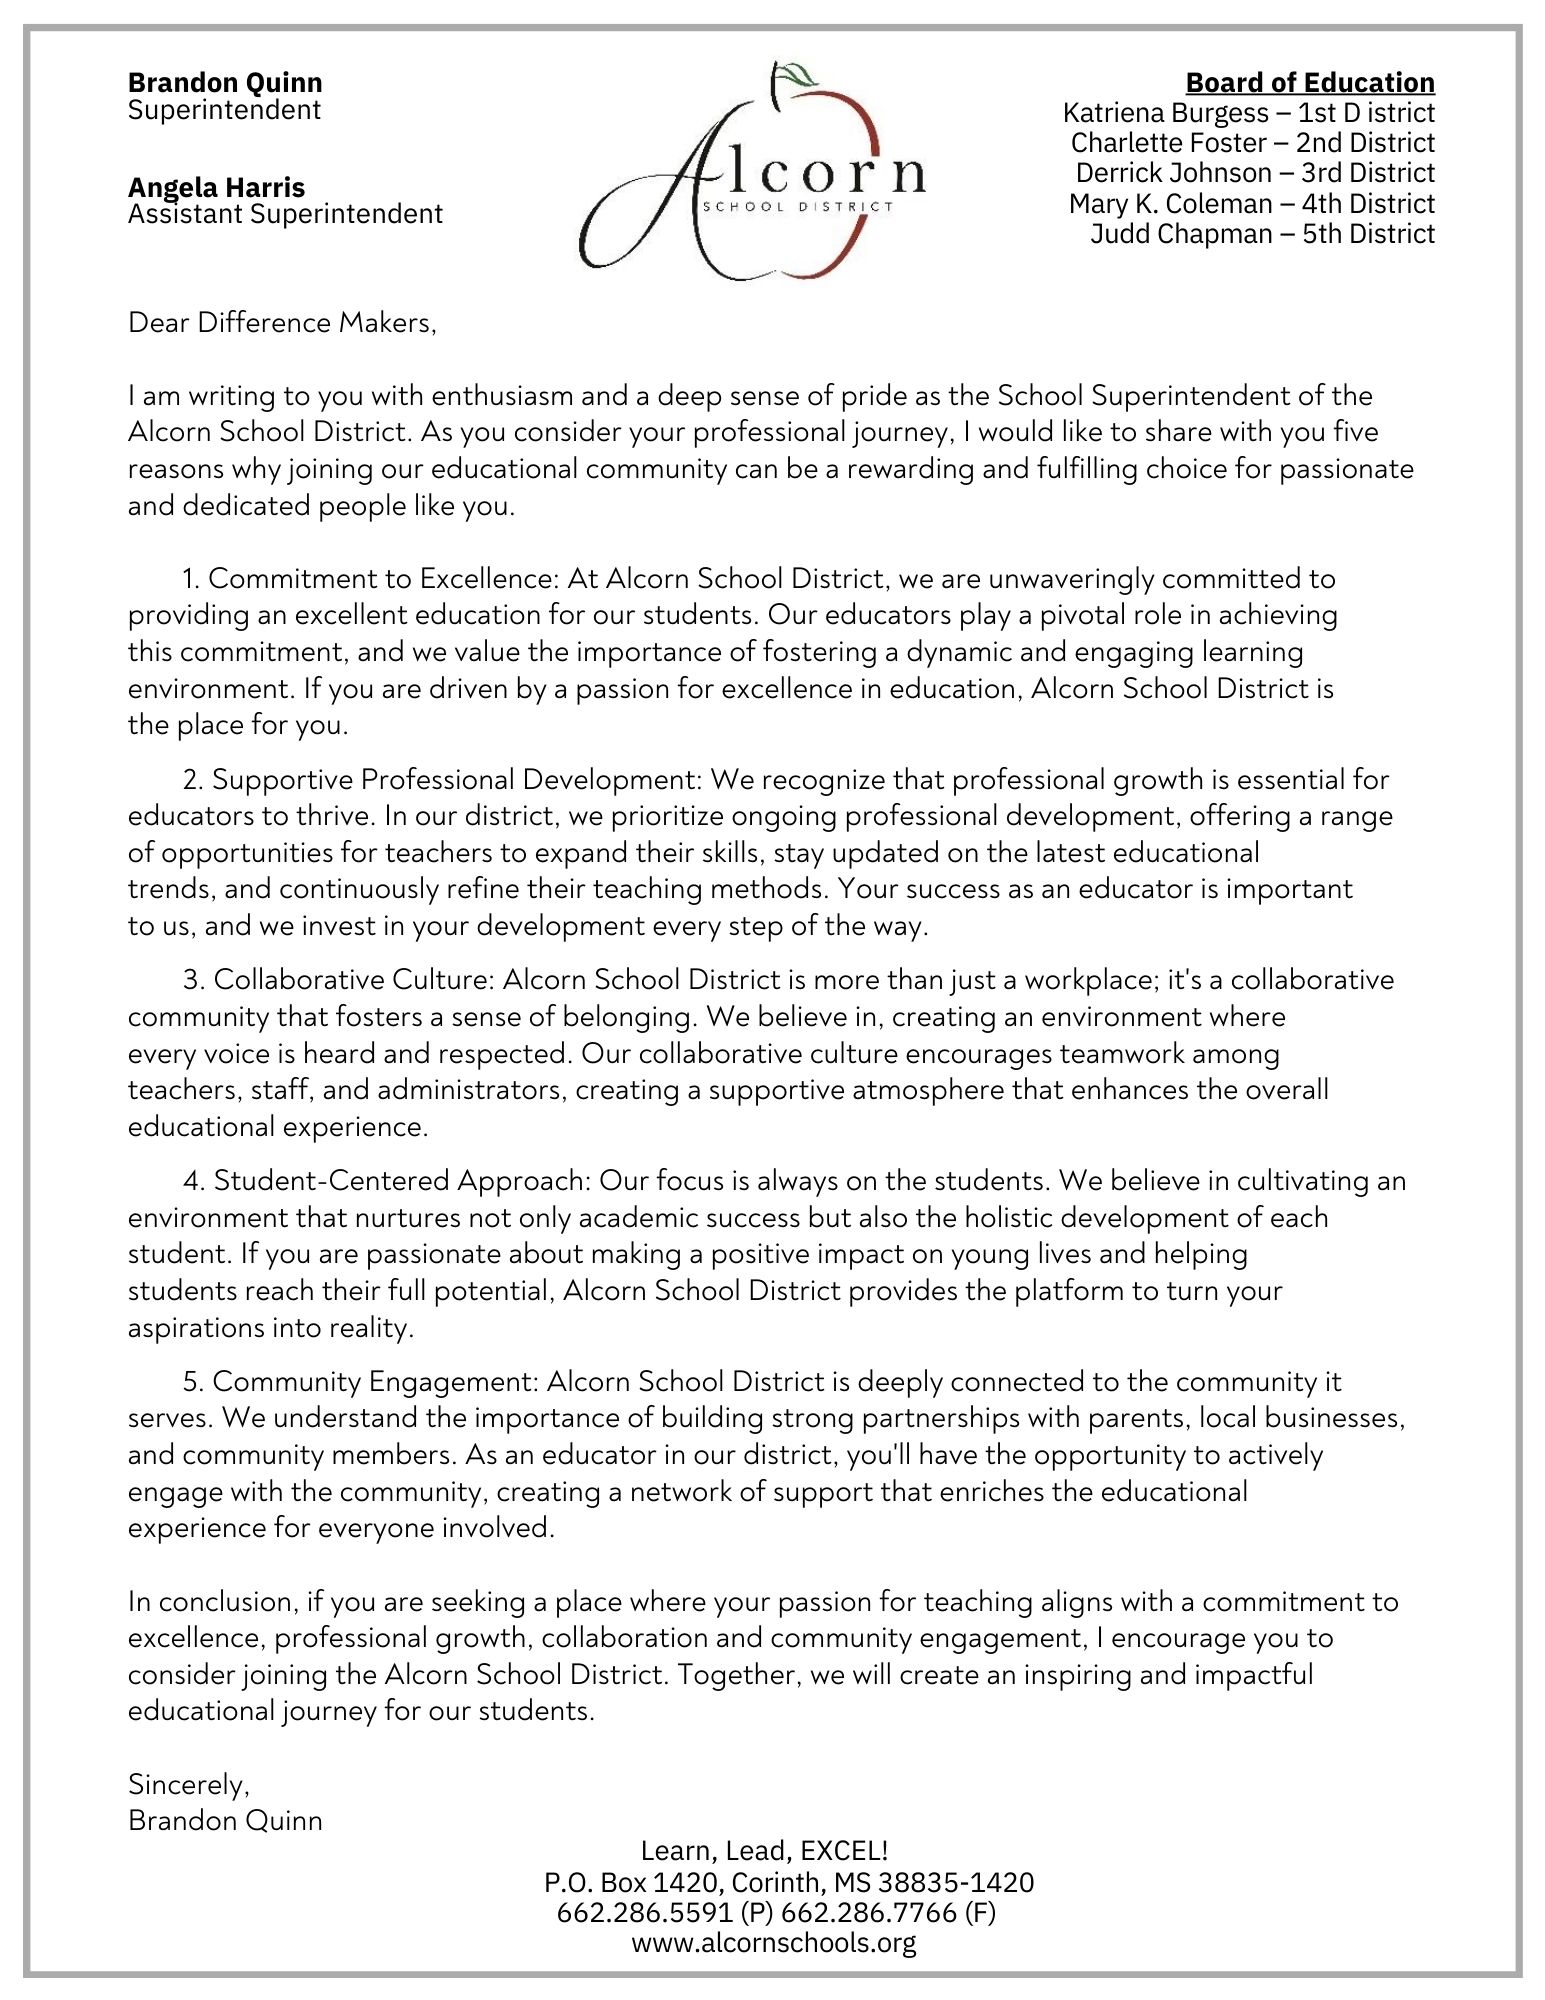 ASD Superintendent Recruitment Letter